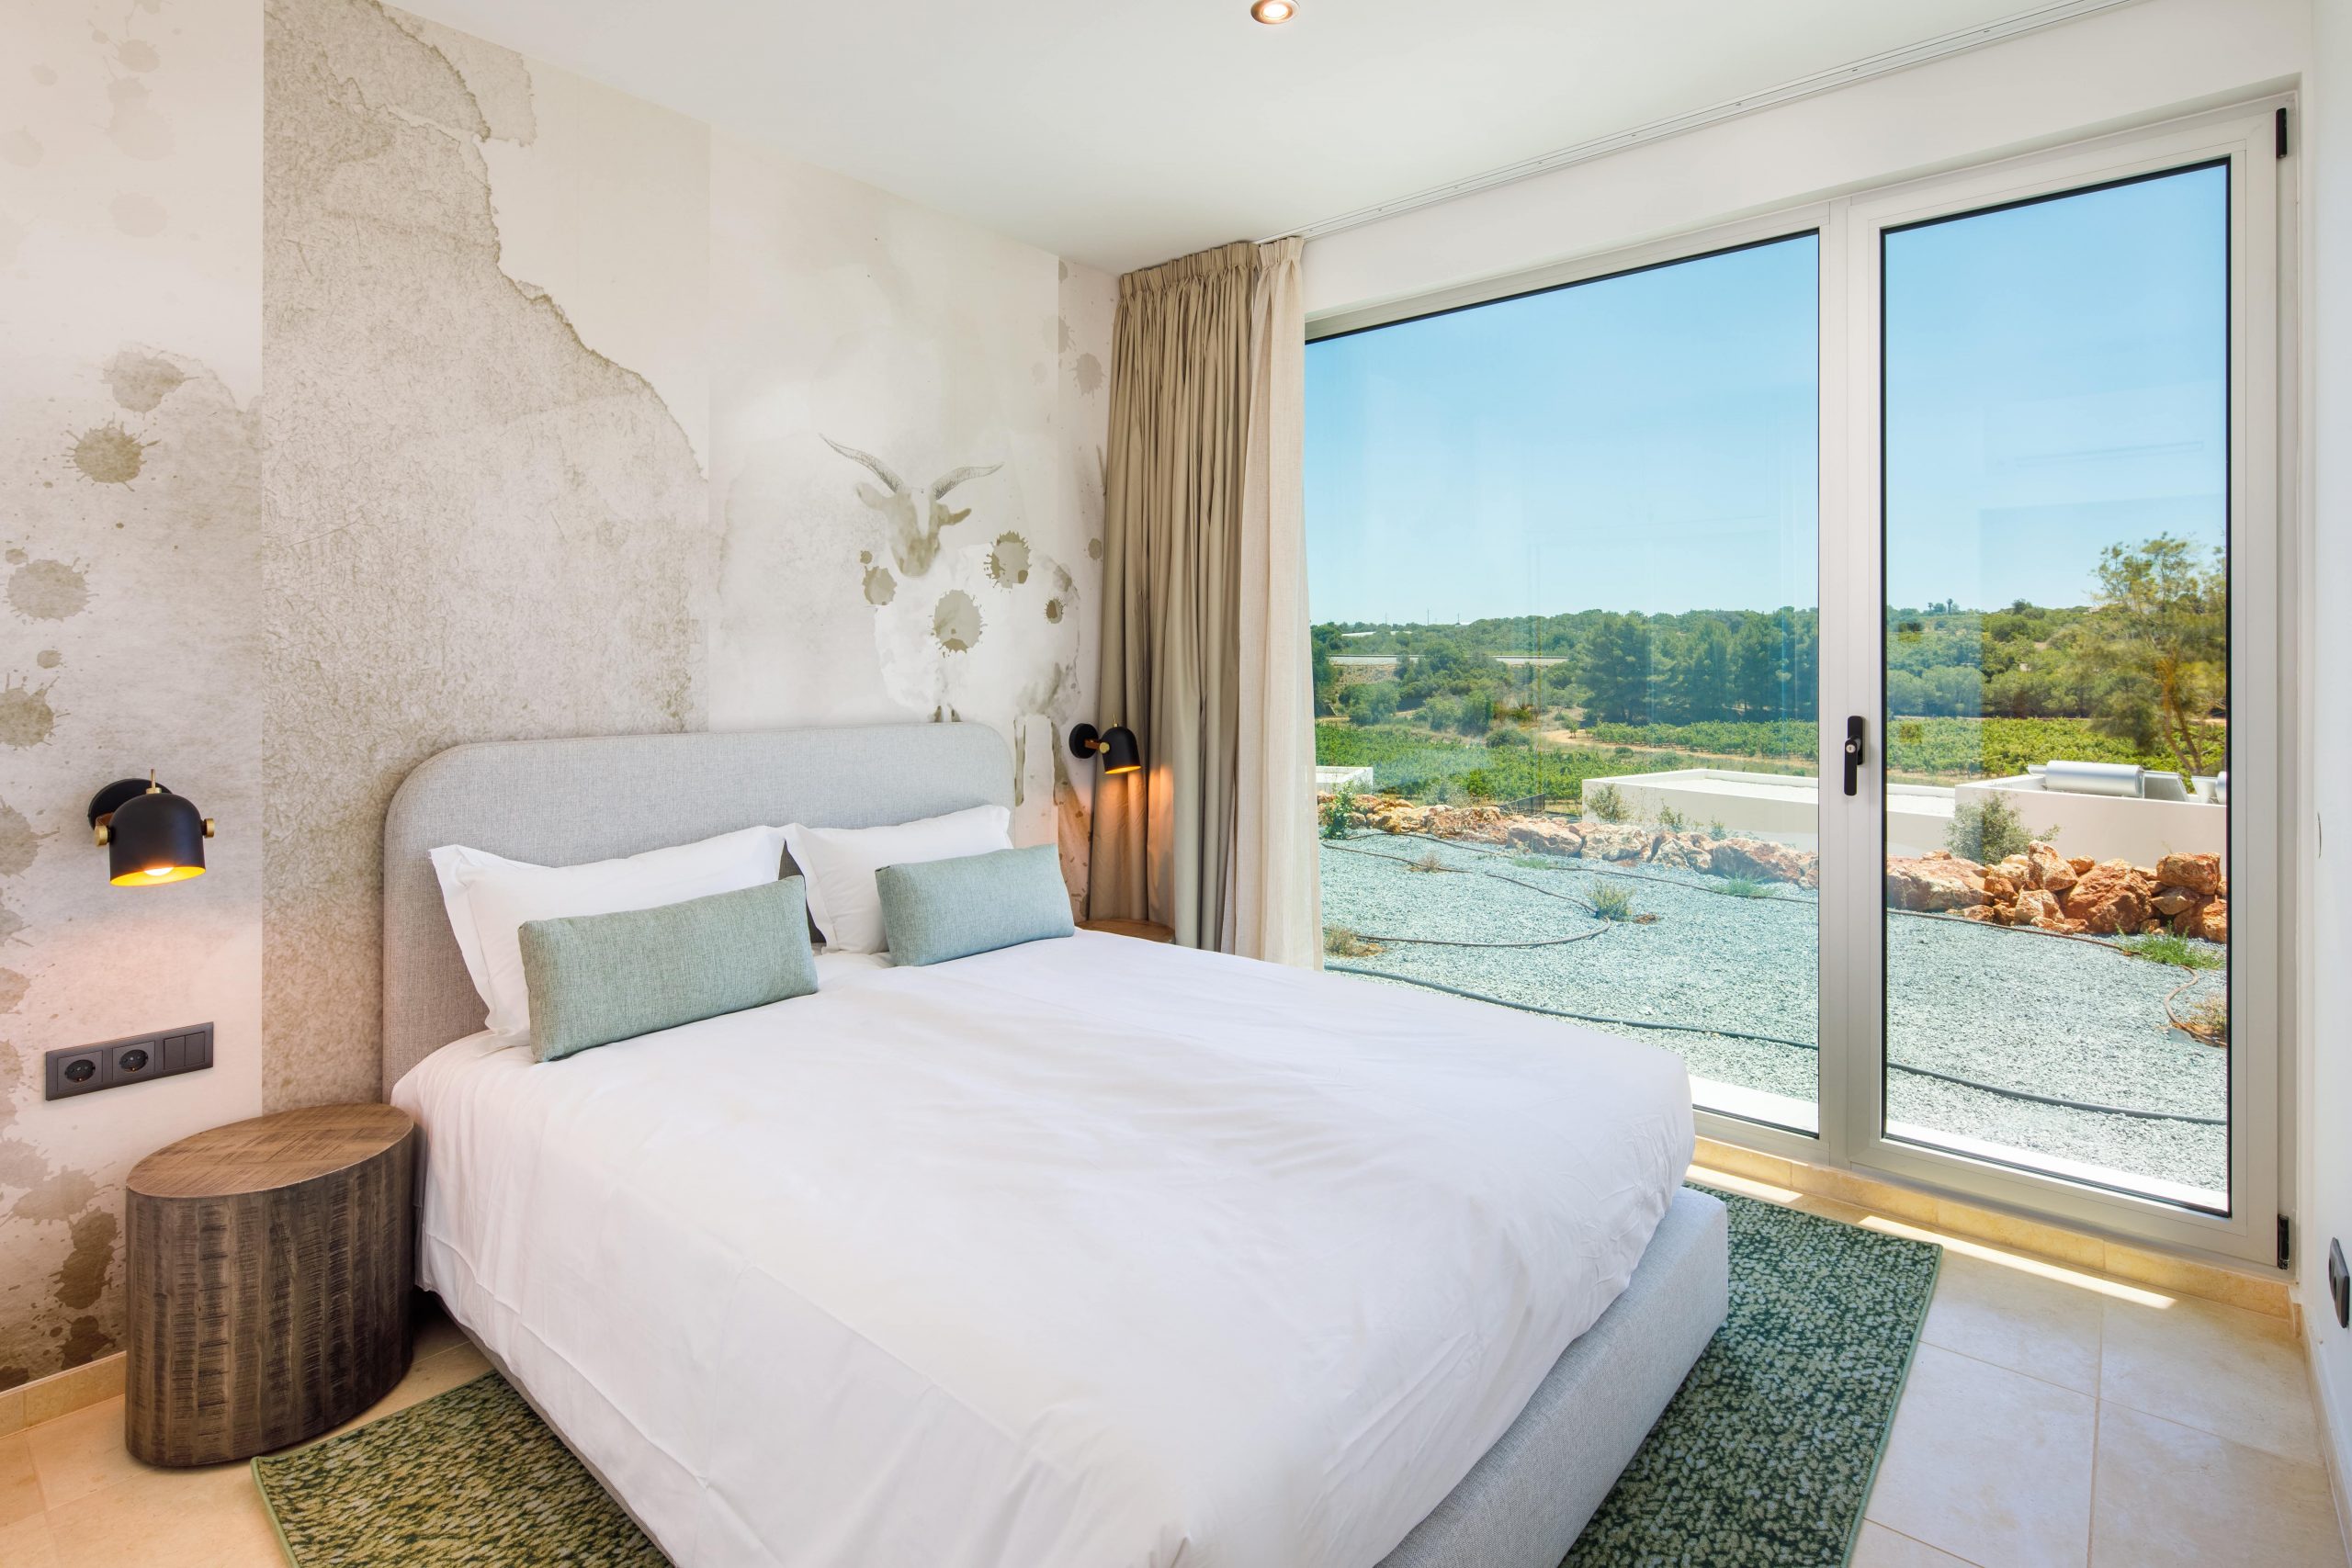 Quinta dos Vales en el Algarve, acercando proyectos Resort a profesionales que pueden trabajar desde cualquier lugar del mundo digital